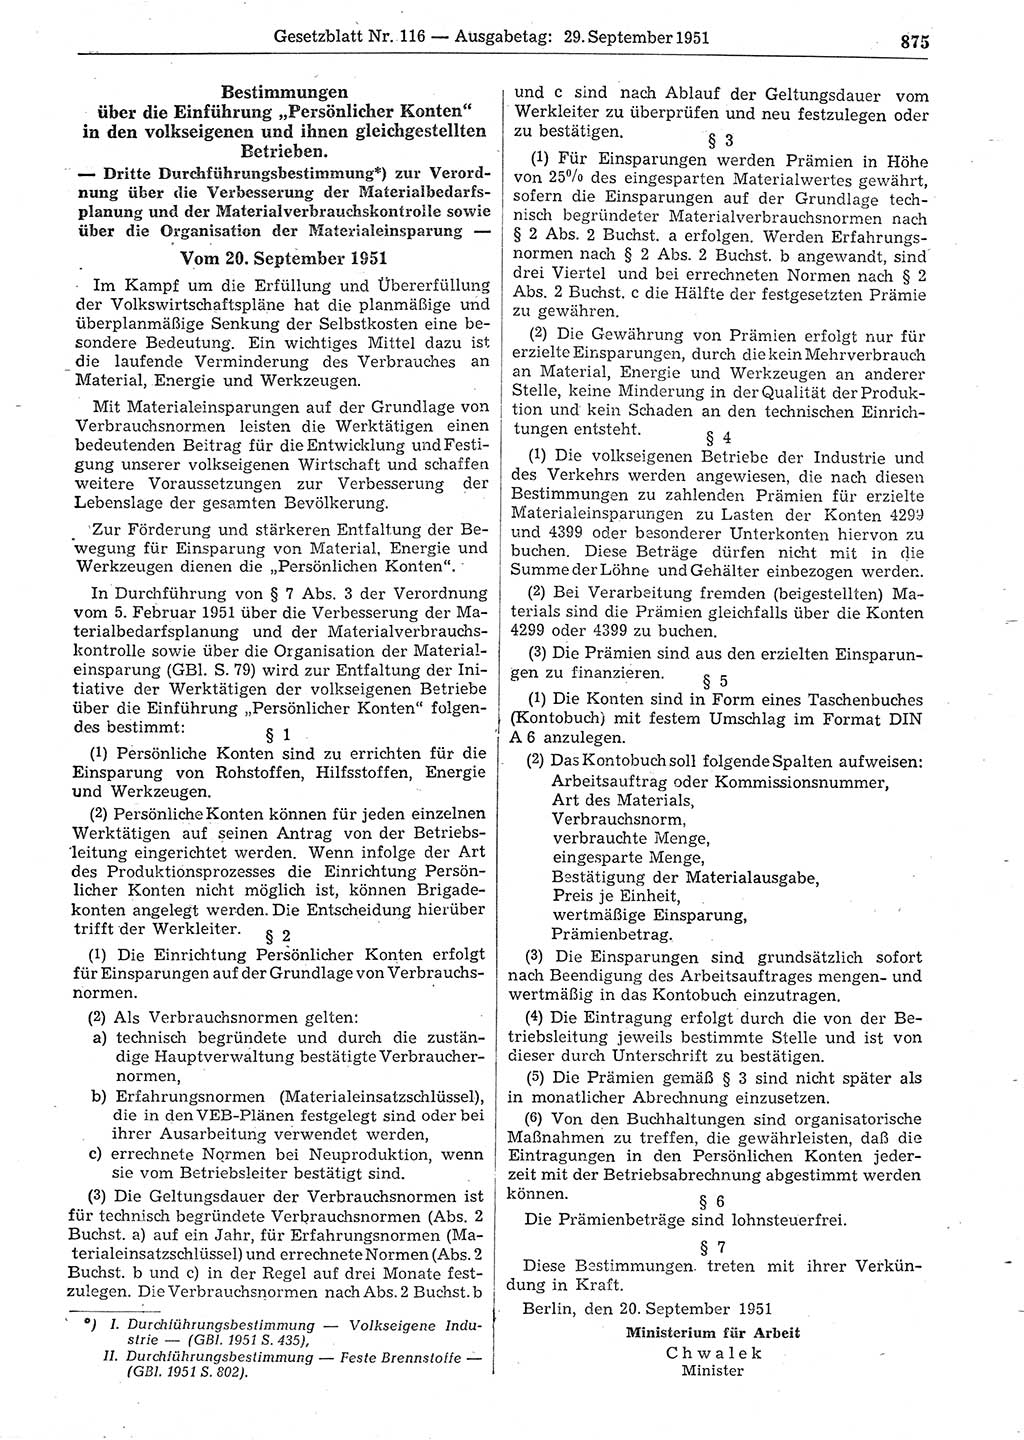 Gesetzblatt (GBl.) der Deutschen Demokratischen Republik (DDR) 1951, Seite 875 (GBl. DDR 1951, S. 875)